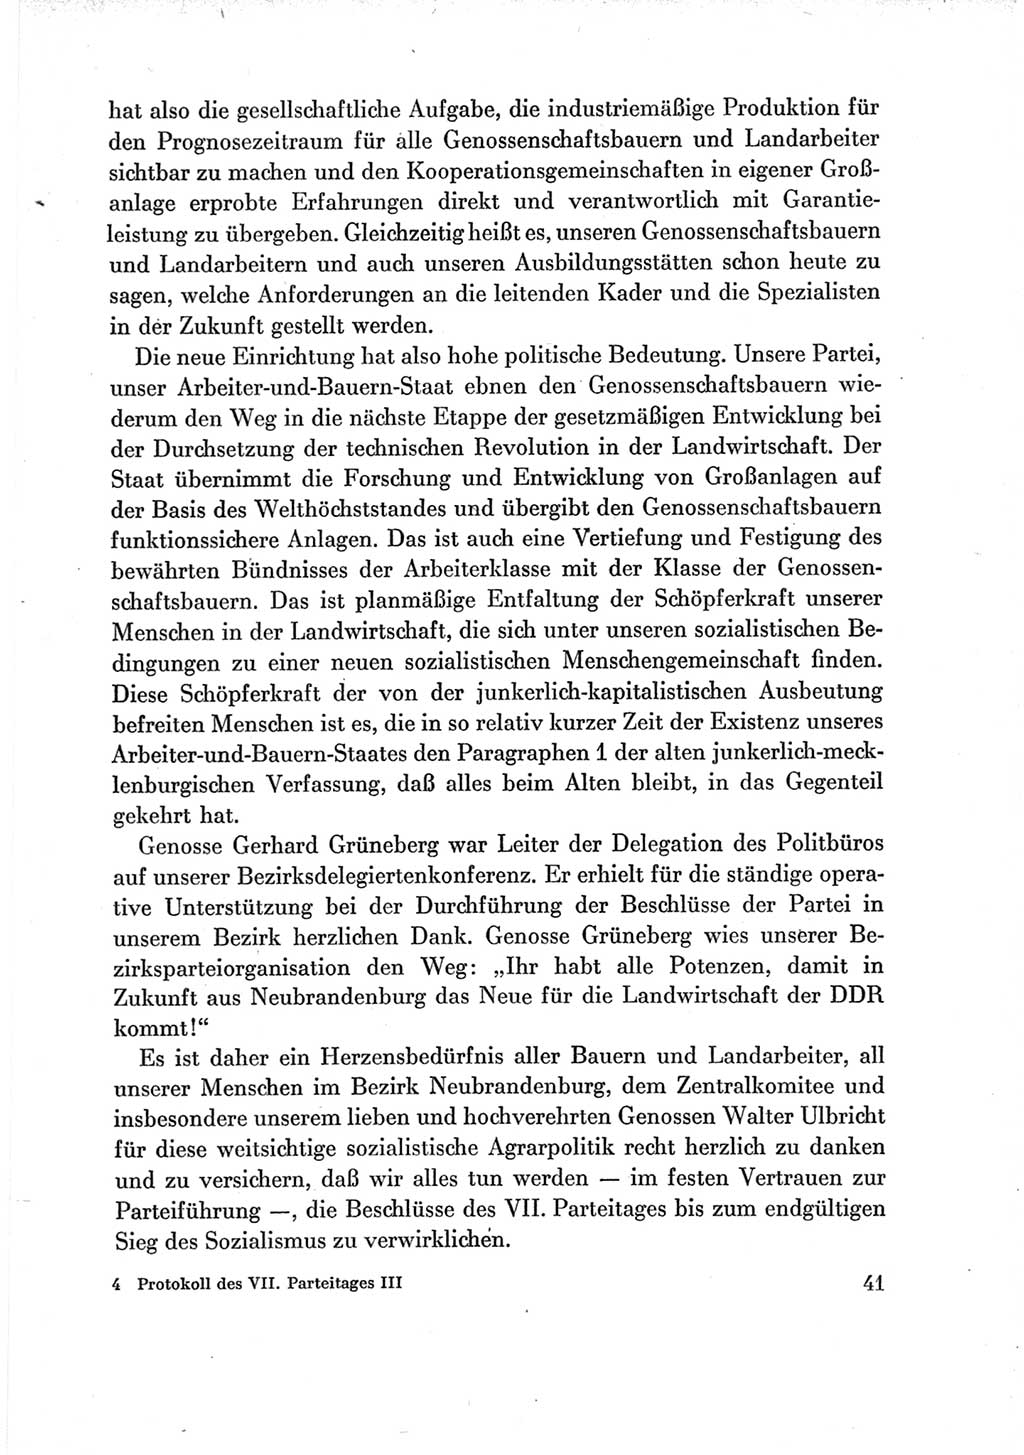 Protokoll der Verhandlungen des Ⅶ. Parteitages der Sozialistischen Einheitspartei Deutschlands (SED) [Deutsche Demokratische Republik (DDR)] 1967, Band Ⅲ, Seite 41 (Prot. Verh. Ⅶ. PT SED DDR 1967, Bd. Ⅲ, S. 41)